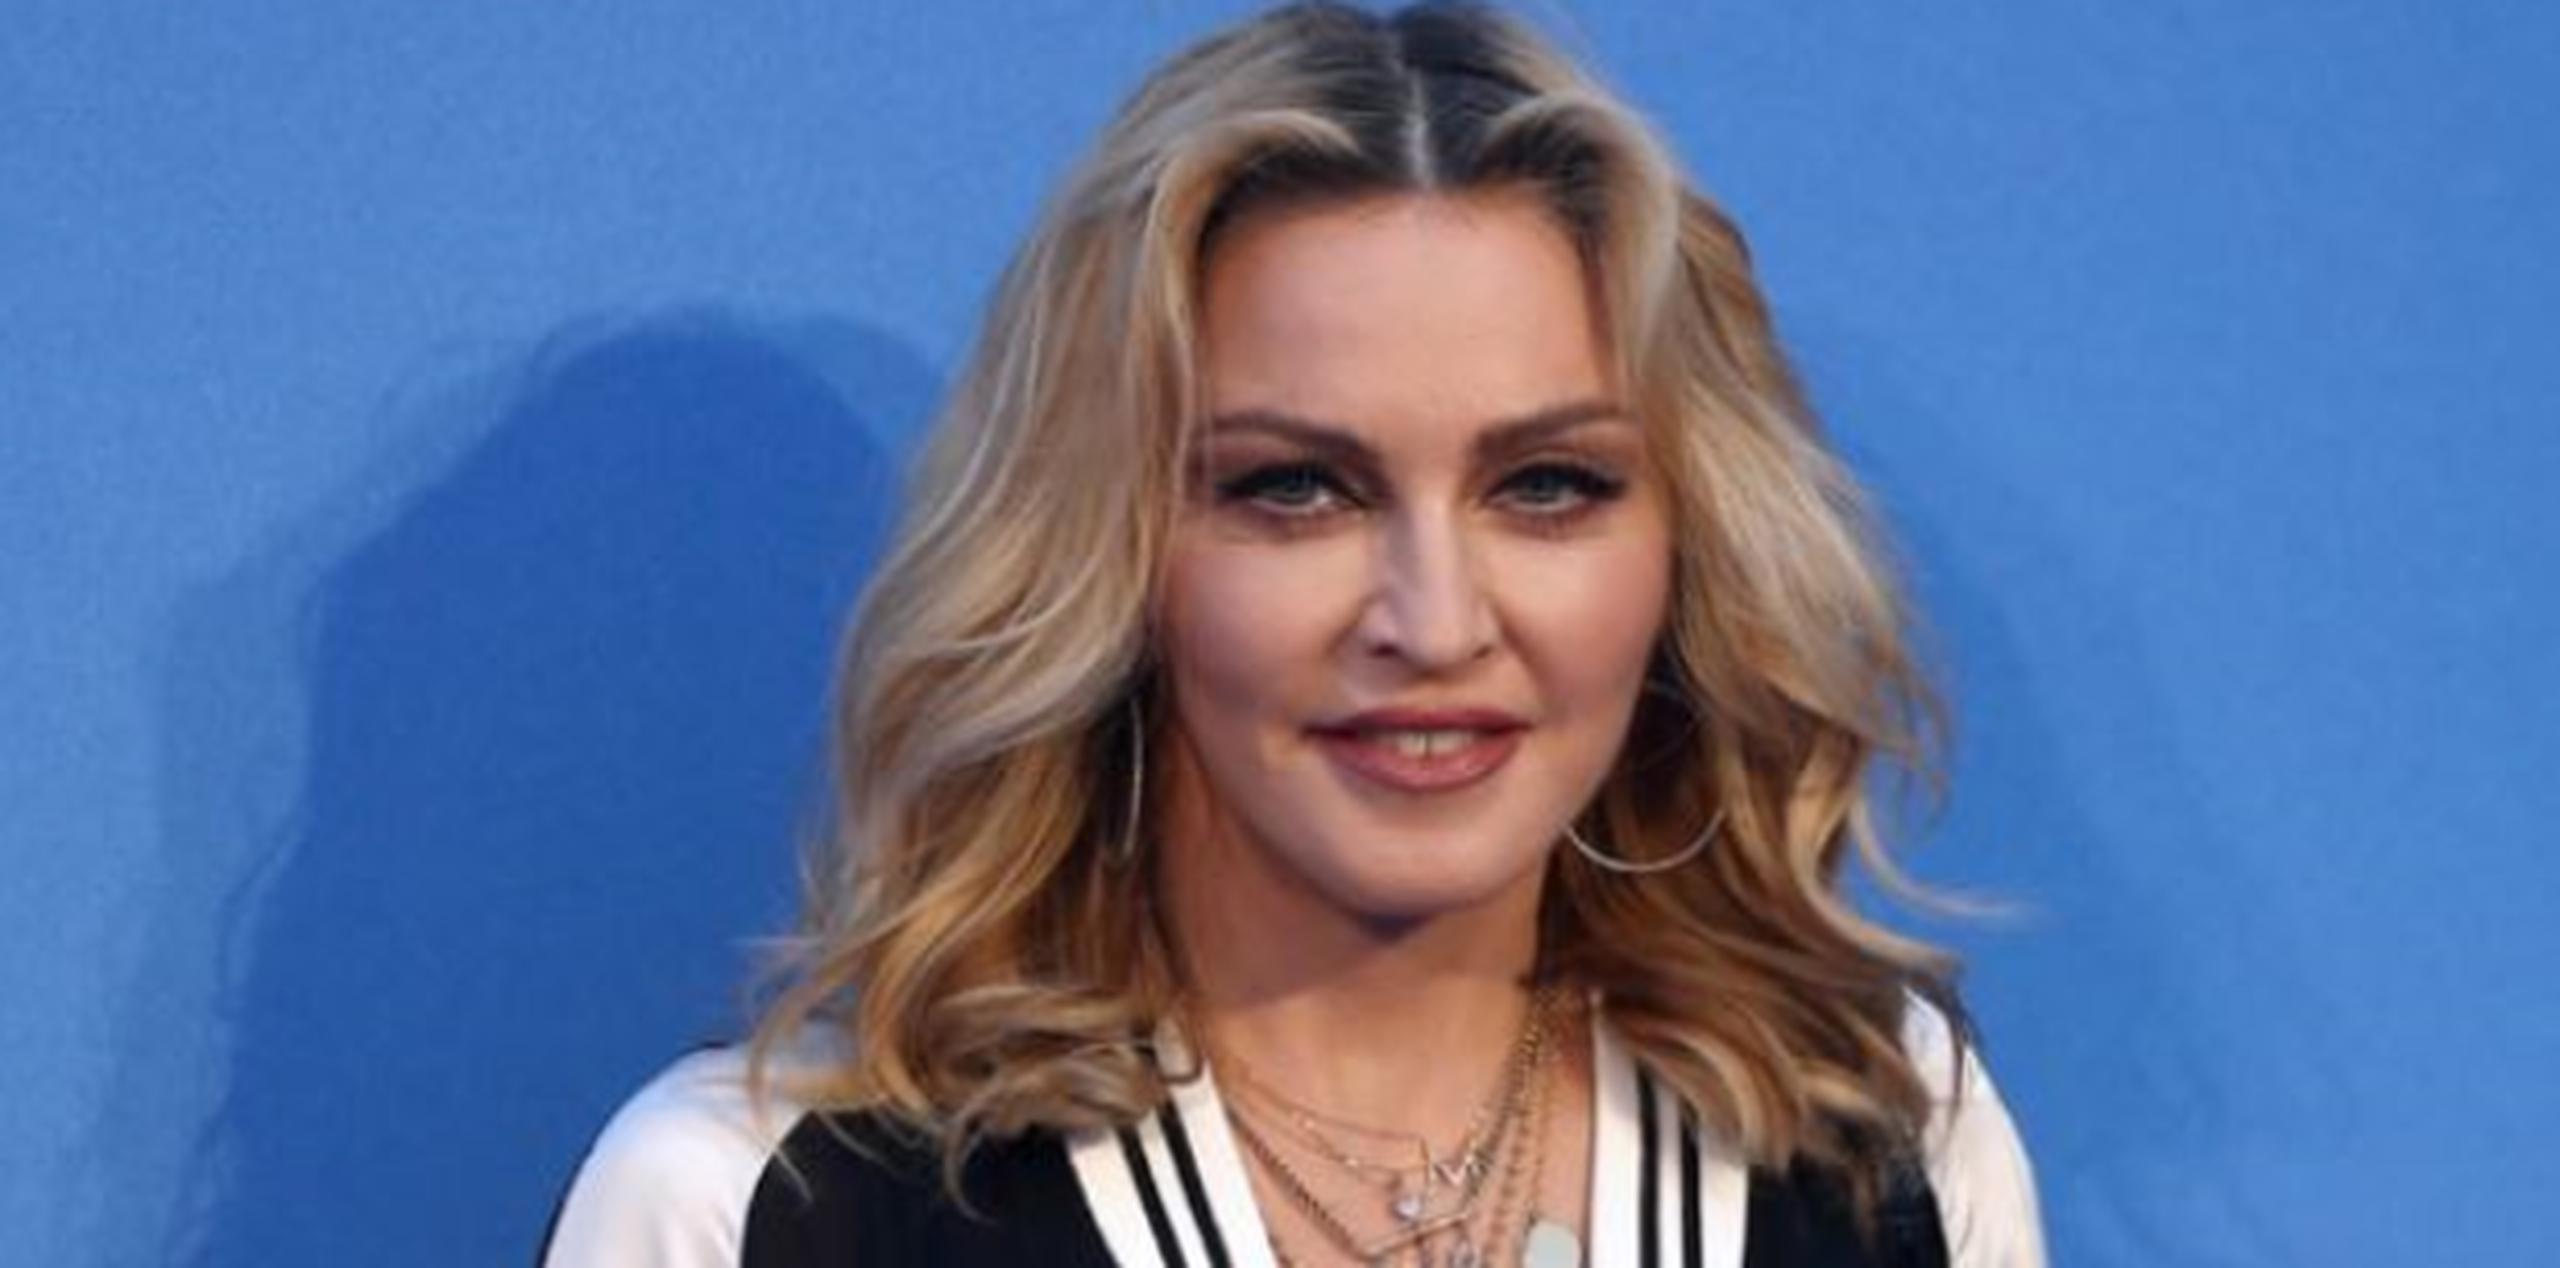 Con la frase “estamos listas para 2018”, Madonna realizó la publicación con su hija. (Archivo)